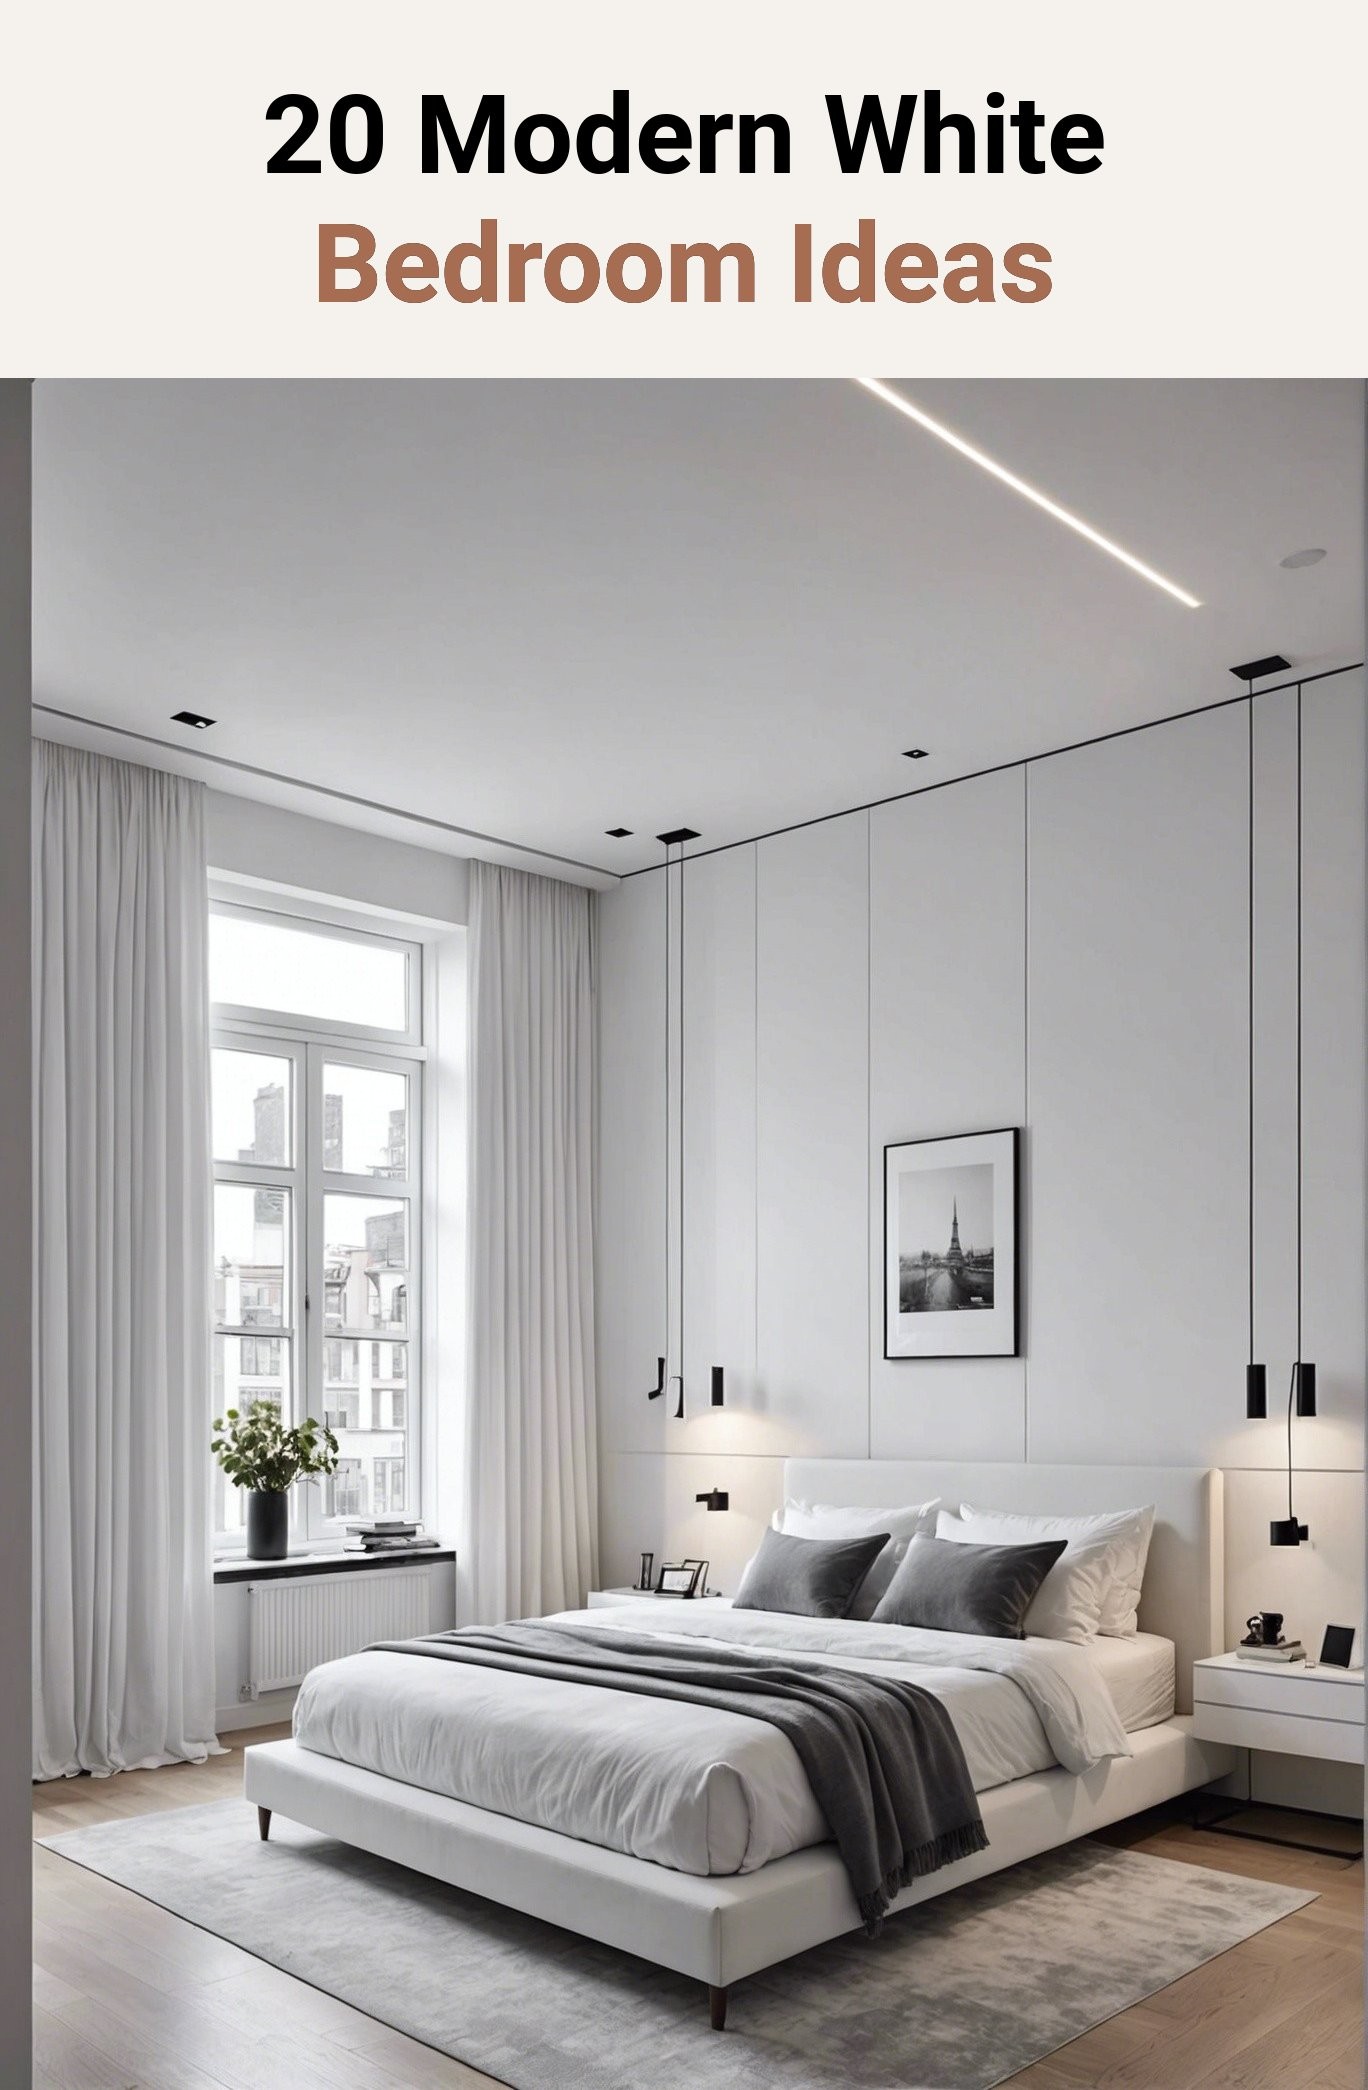 20 Modern White Bedroom Ideas